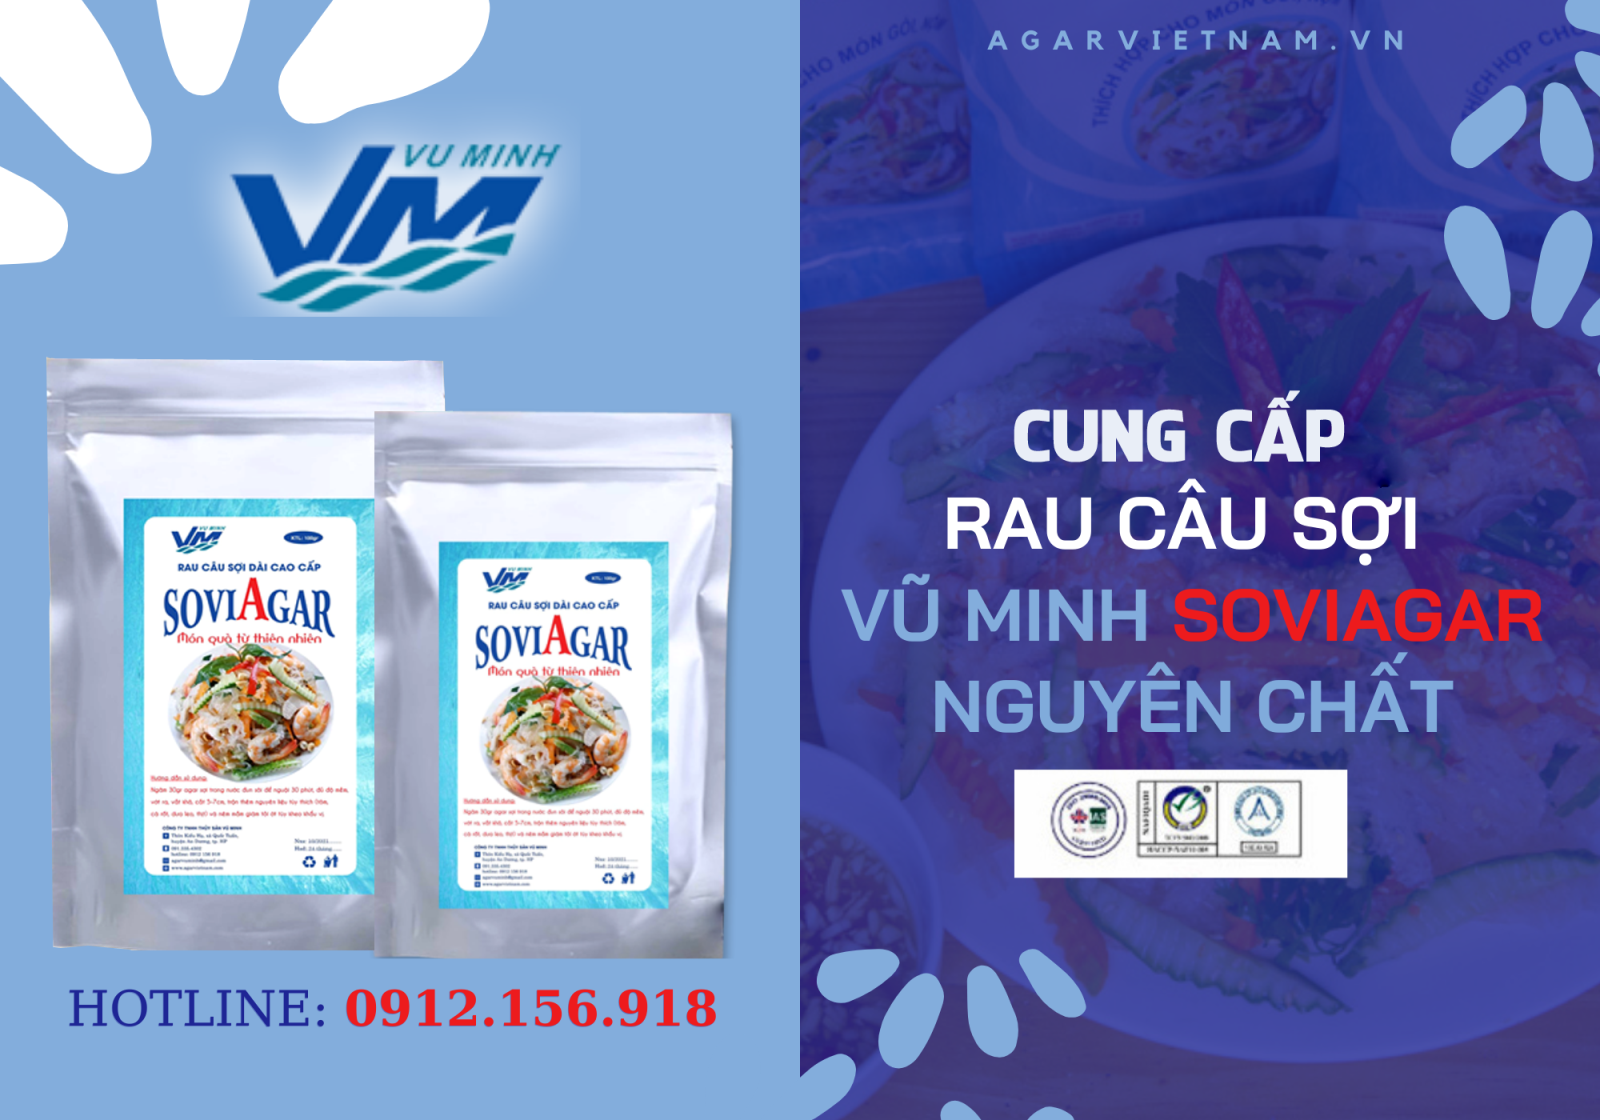 Mua rau câu sợi giòn nguyên chất, chất lượng tại Agar Việt Nam- Vũ Minh